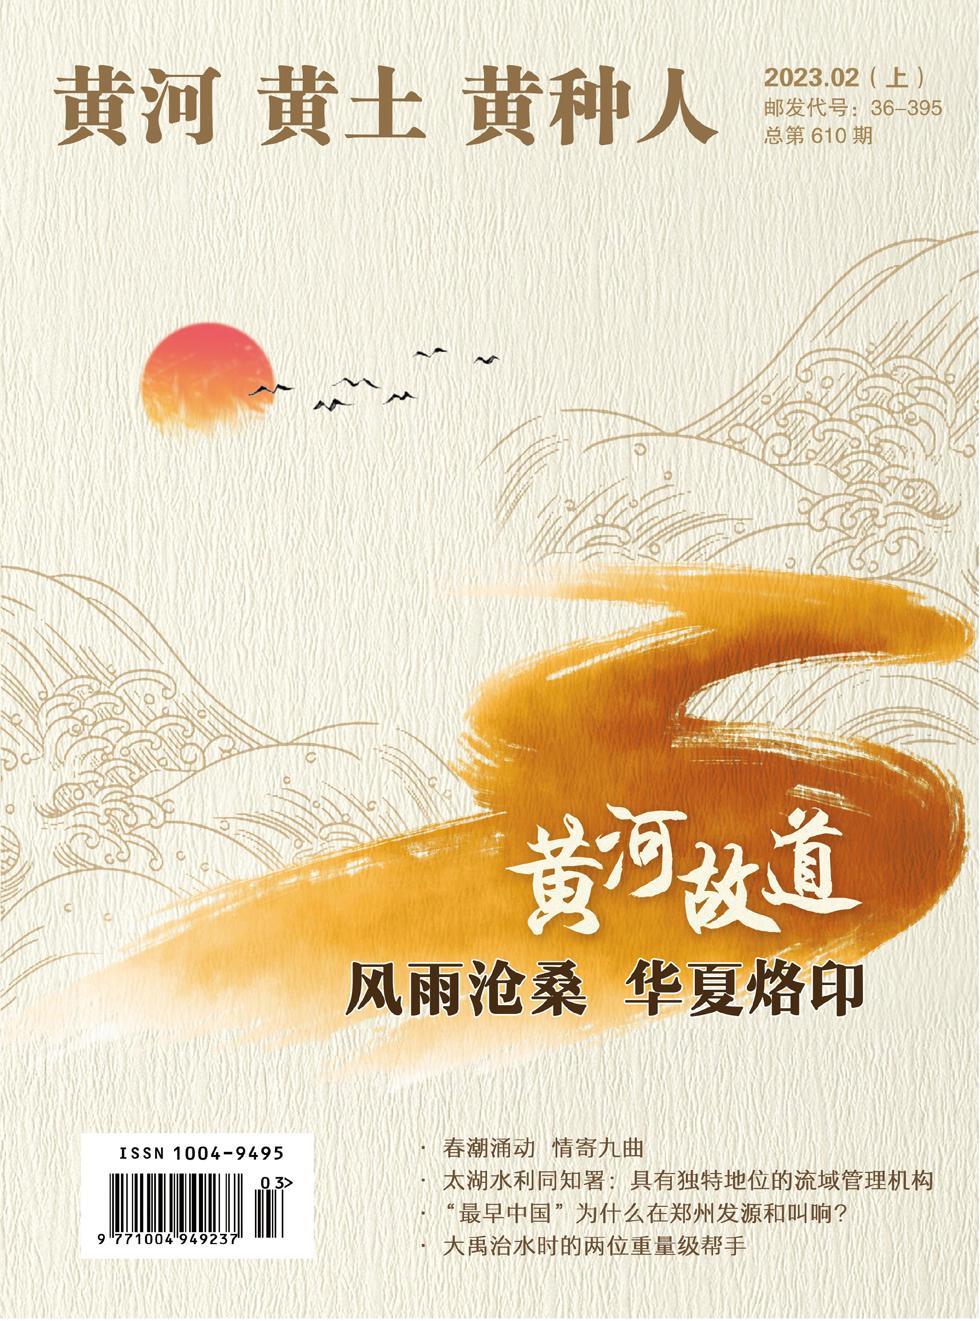 黄河黄土黄种人·水与中国杂志封面